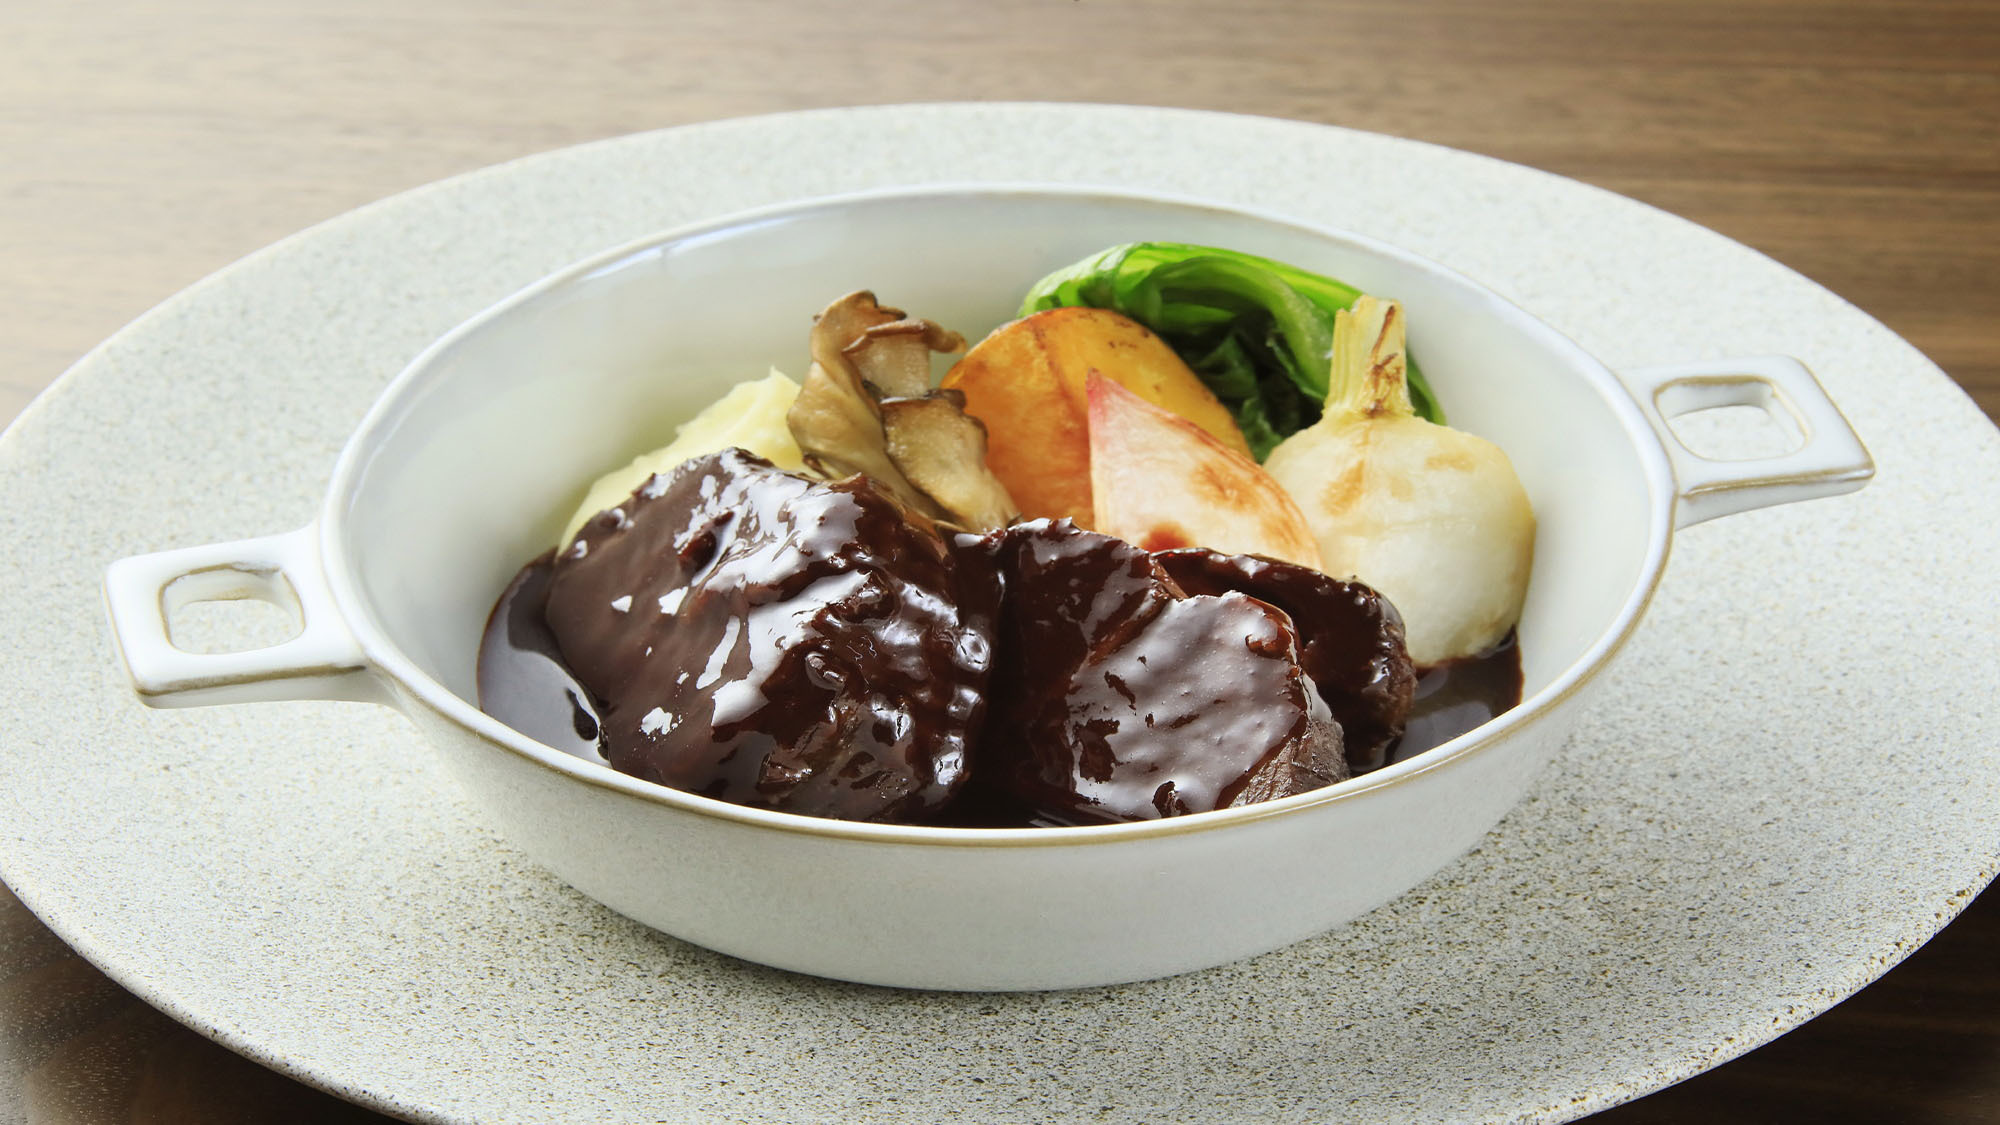 【夕食】伊豆の地酒で煮込んだ牛バラ肉の煮込み